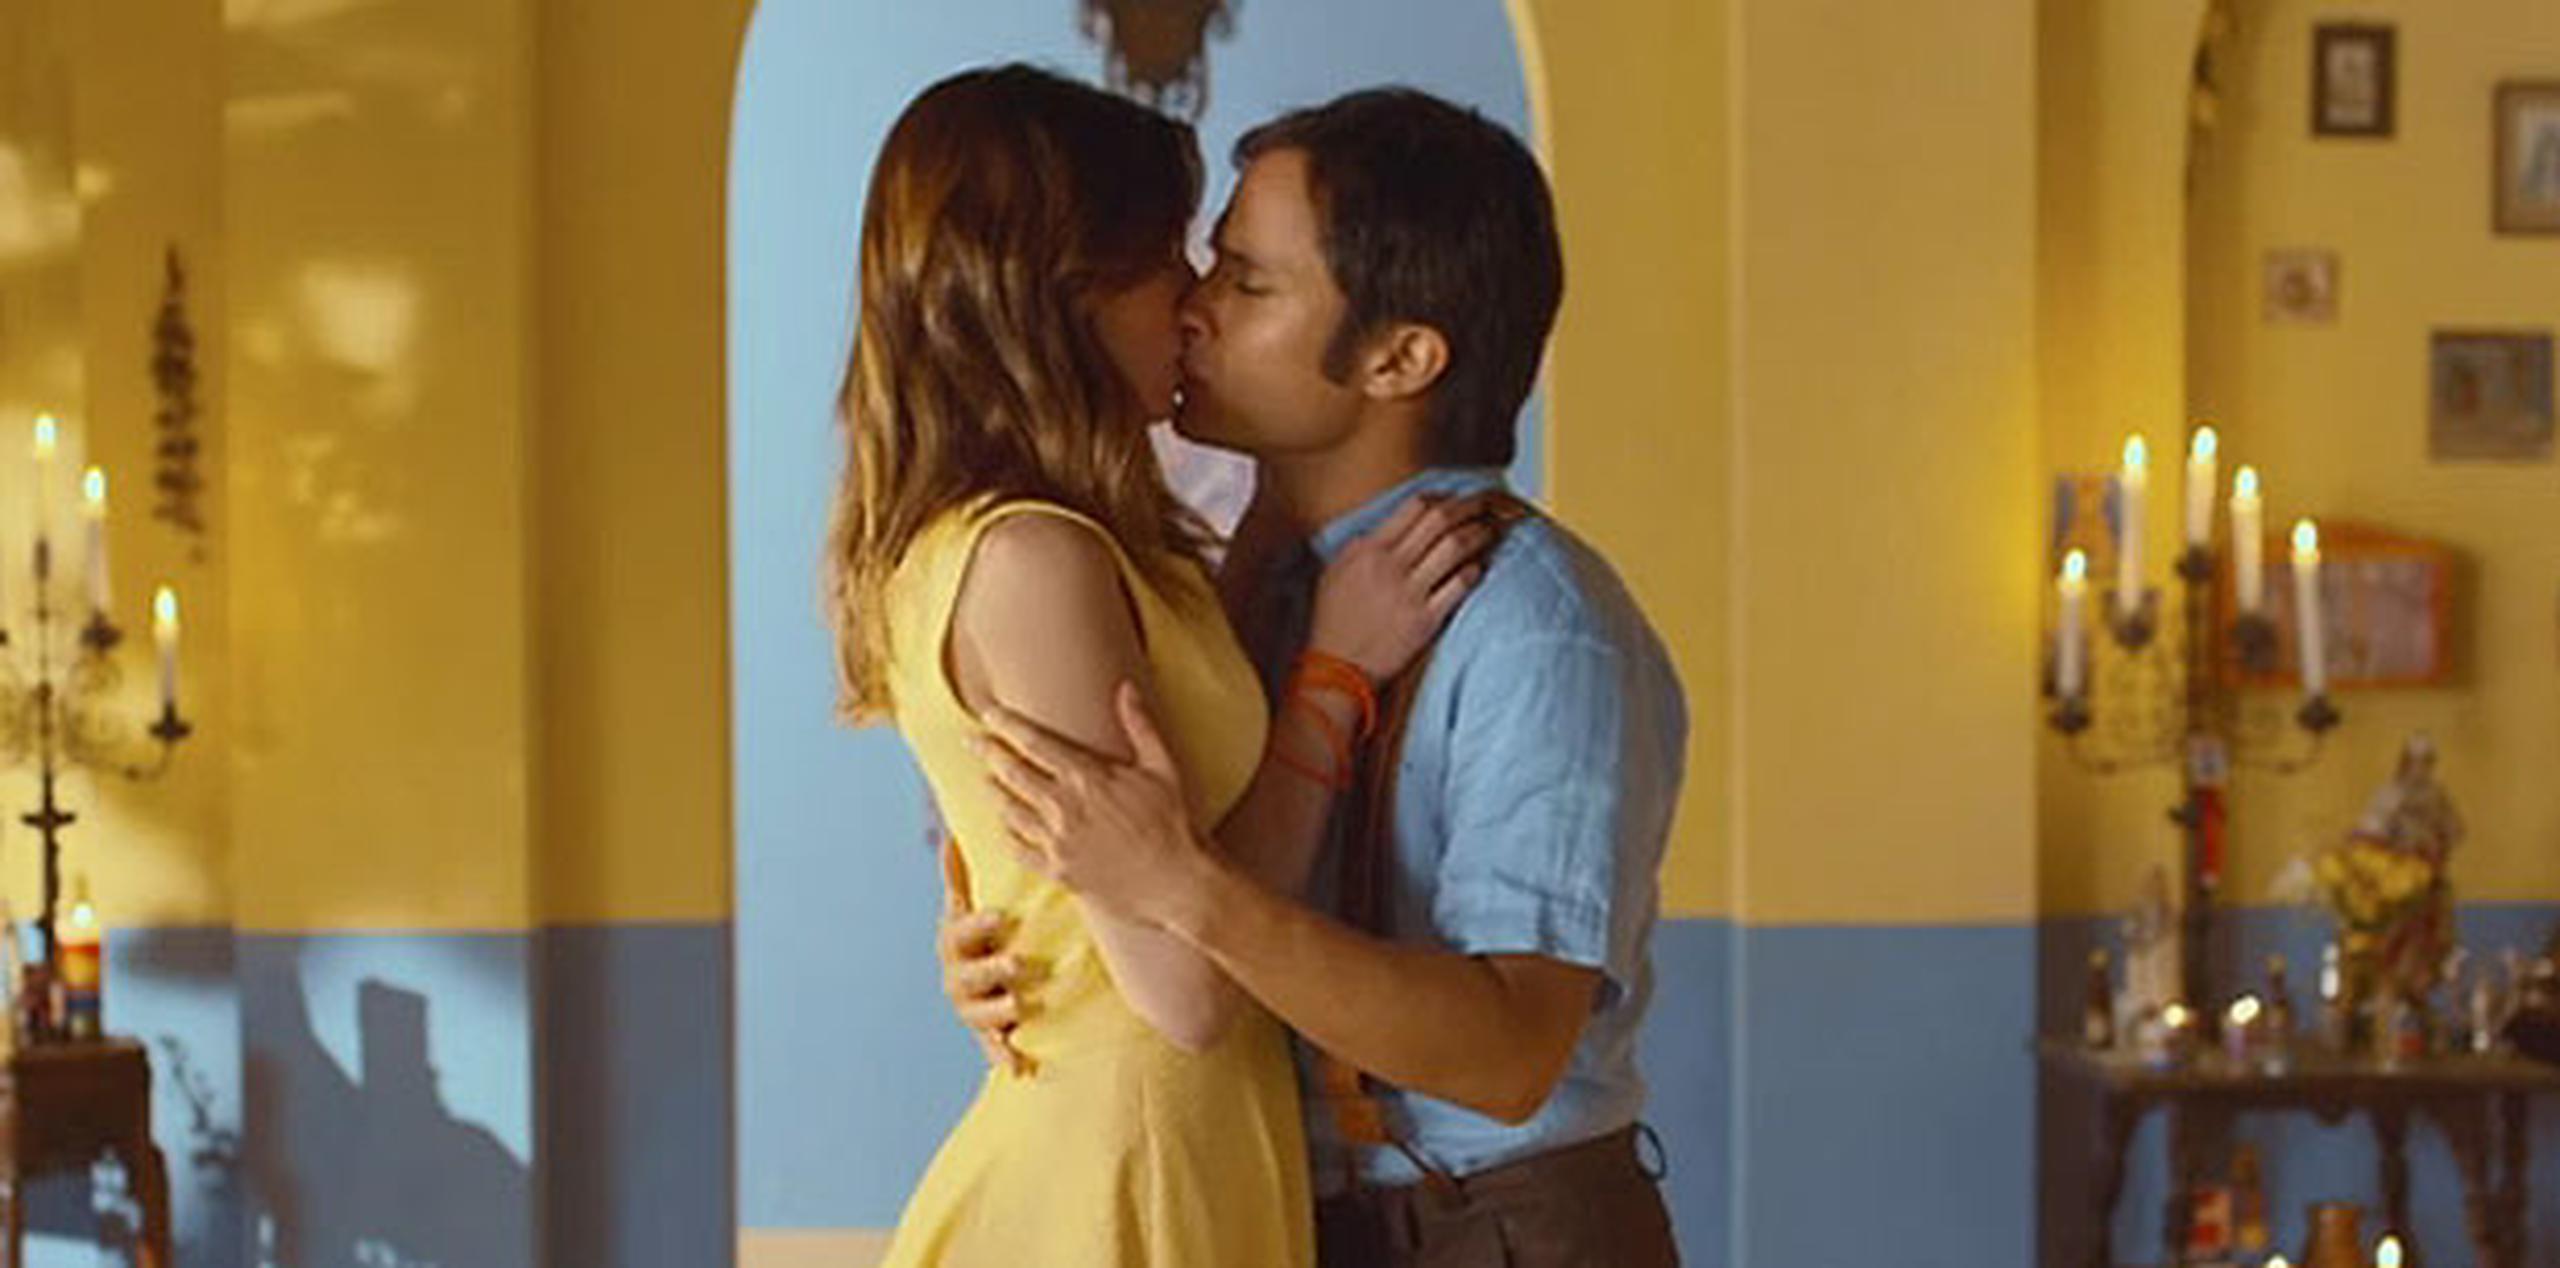 El vídeo, realizado en Argentina, cuenta con la participación del actor mexicano Gael García Bernal y a la actriz española María Valverde. (Youtube)